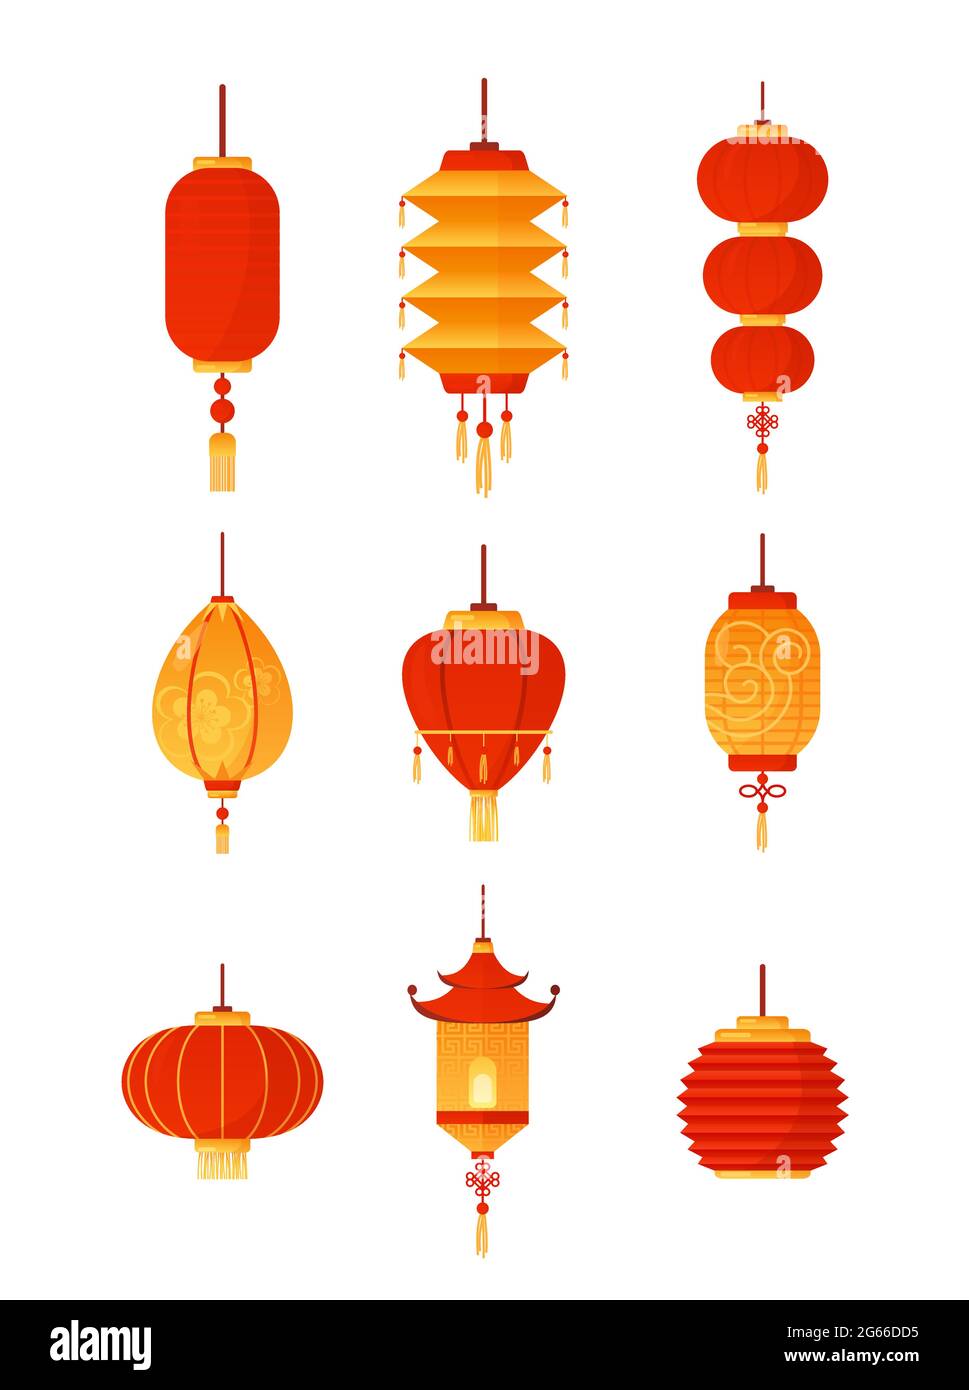 Illustration vectorielle de lanternes chinoises sur fond blanc. Collection de lanternes rouges traditionnelles, décorations de fête. Culture chinoise Illustration de Vecteur